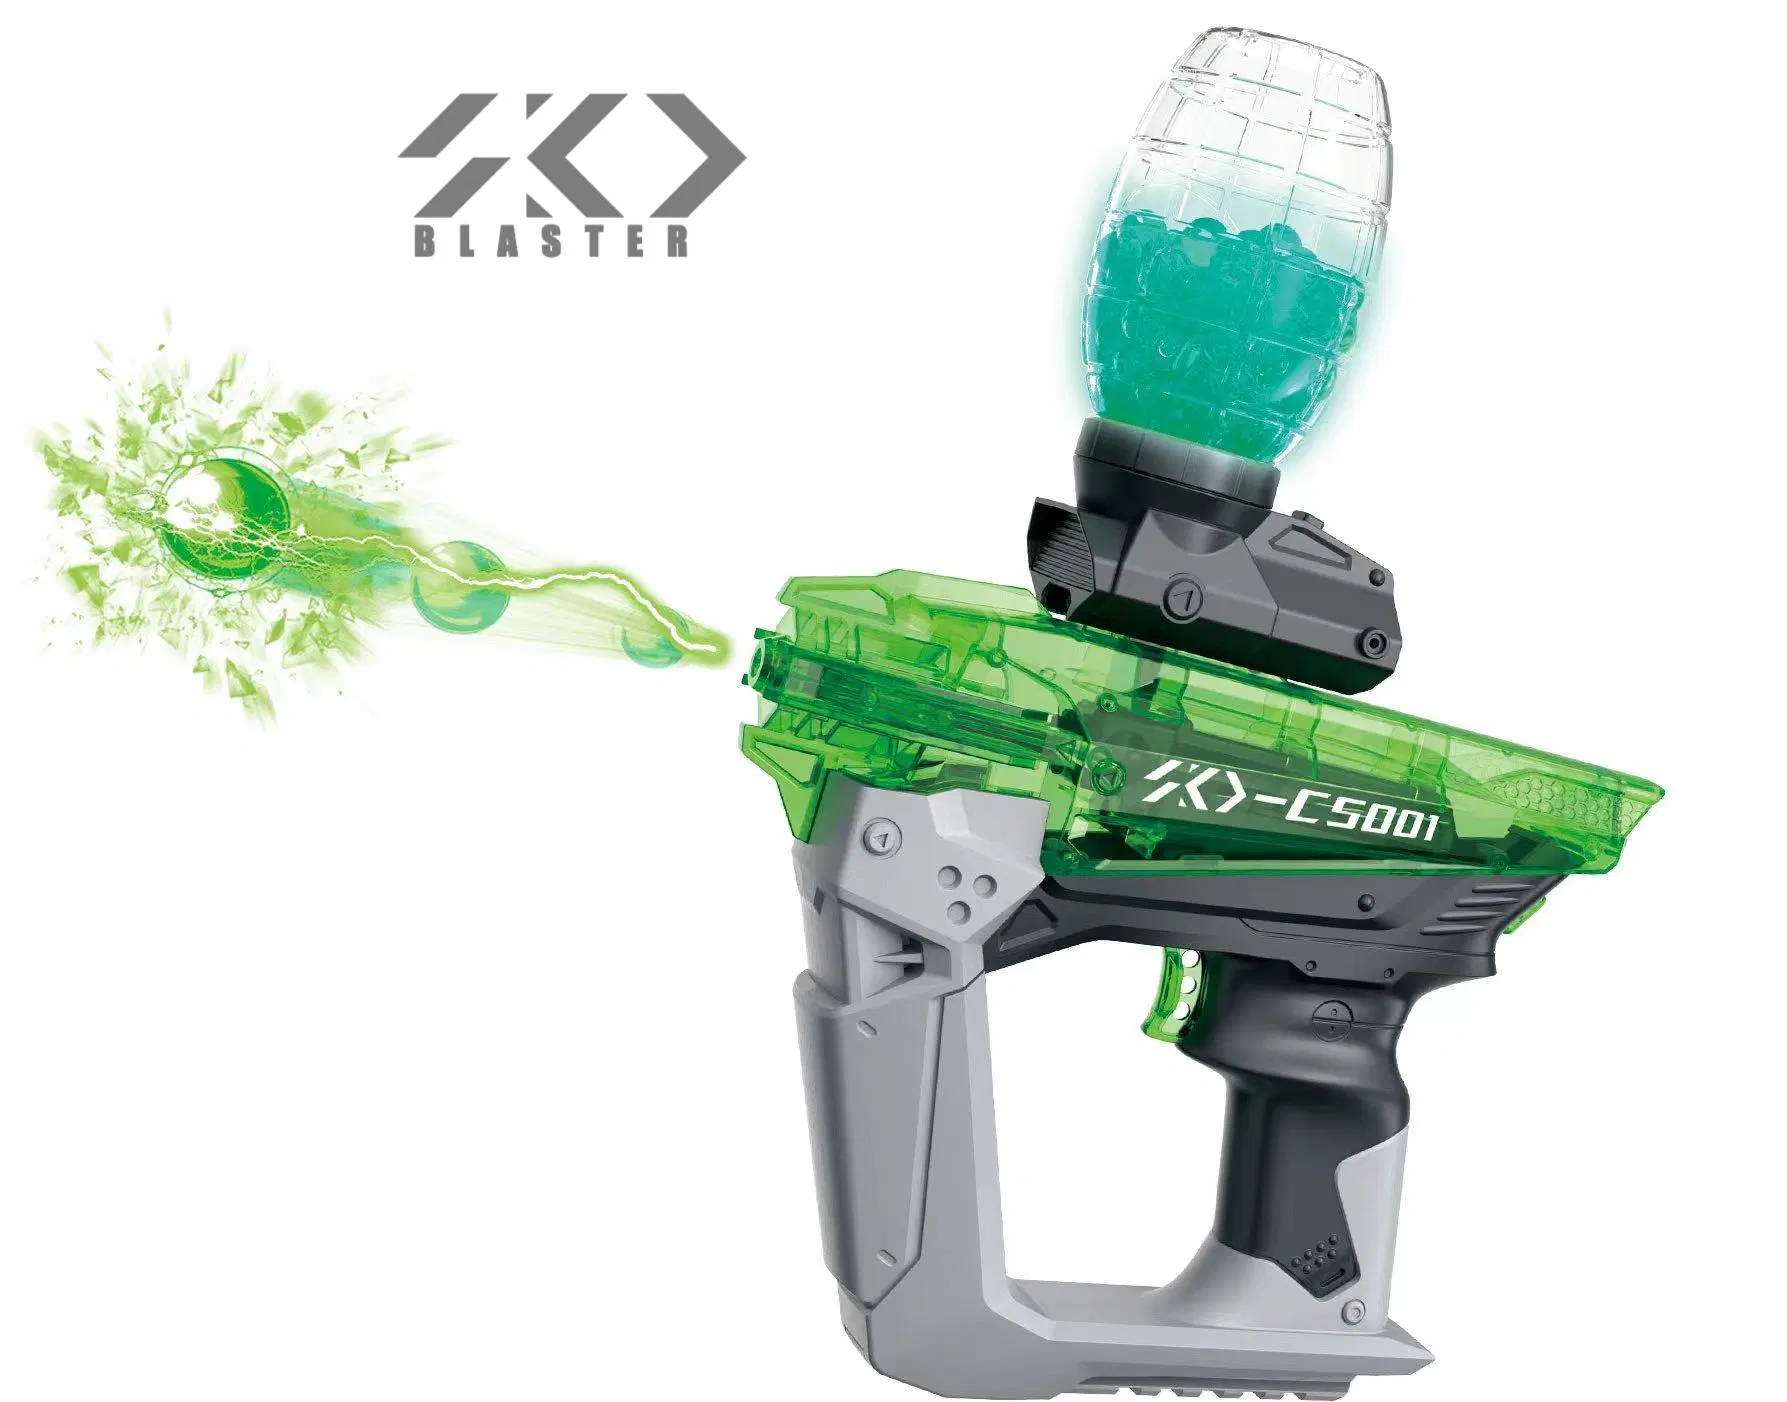 بندقية لعبة SKD Blaster Toy Gun Ball Gun Toy Glow in The Dark Automatic Gel Ball Blaster Gun Water Gel Pistol Luminous Orbeez Toy Gun with LED Light